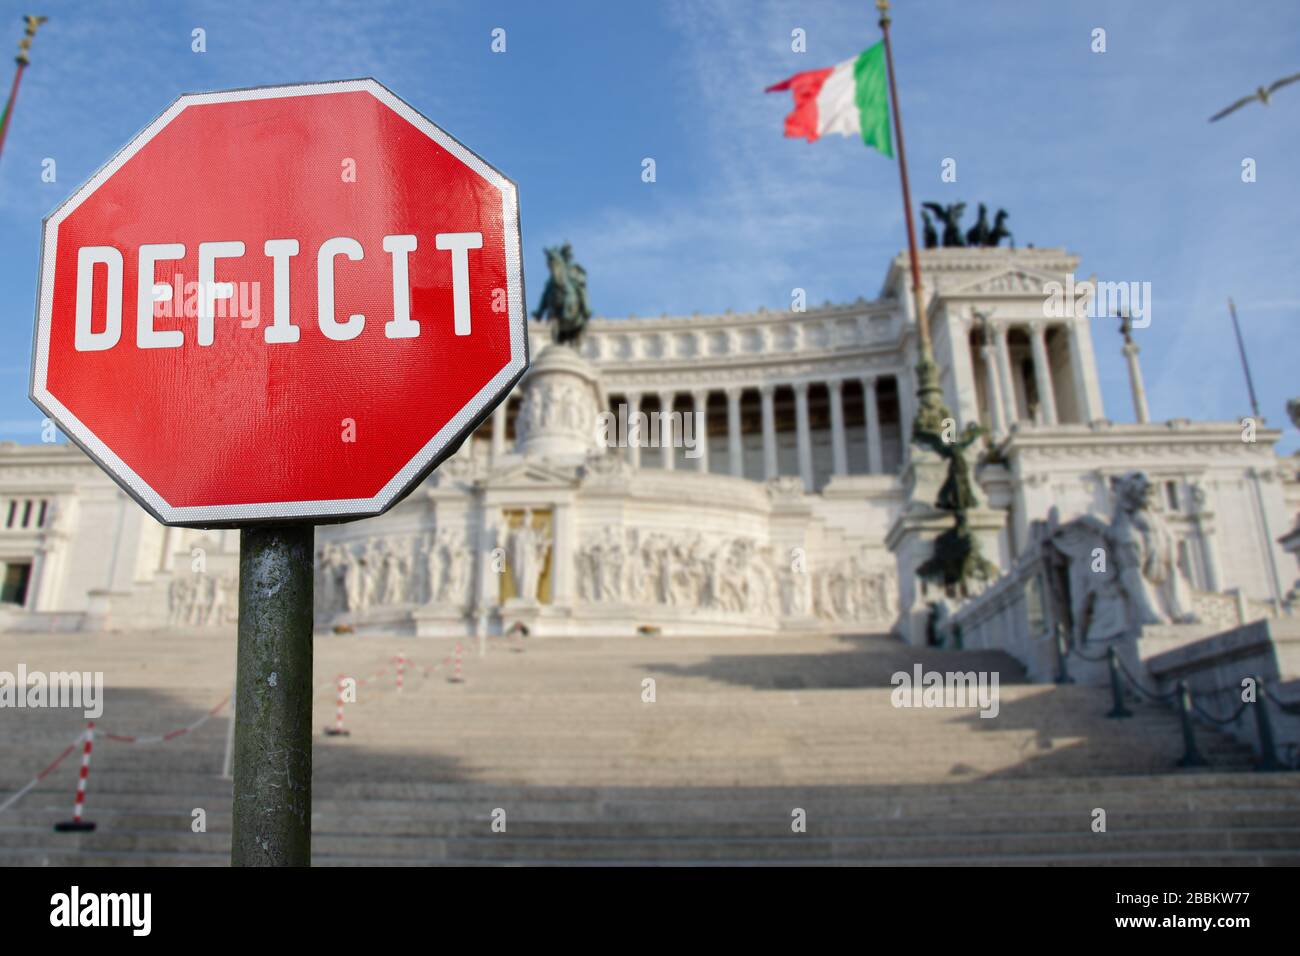 Defizitschild mit Vaterlandsaltar in Rom, Italien. Defizit im italienischen Staatshaushalt. Stockfoto